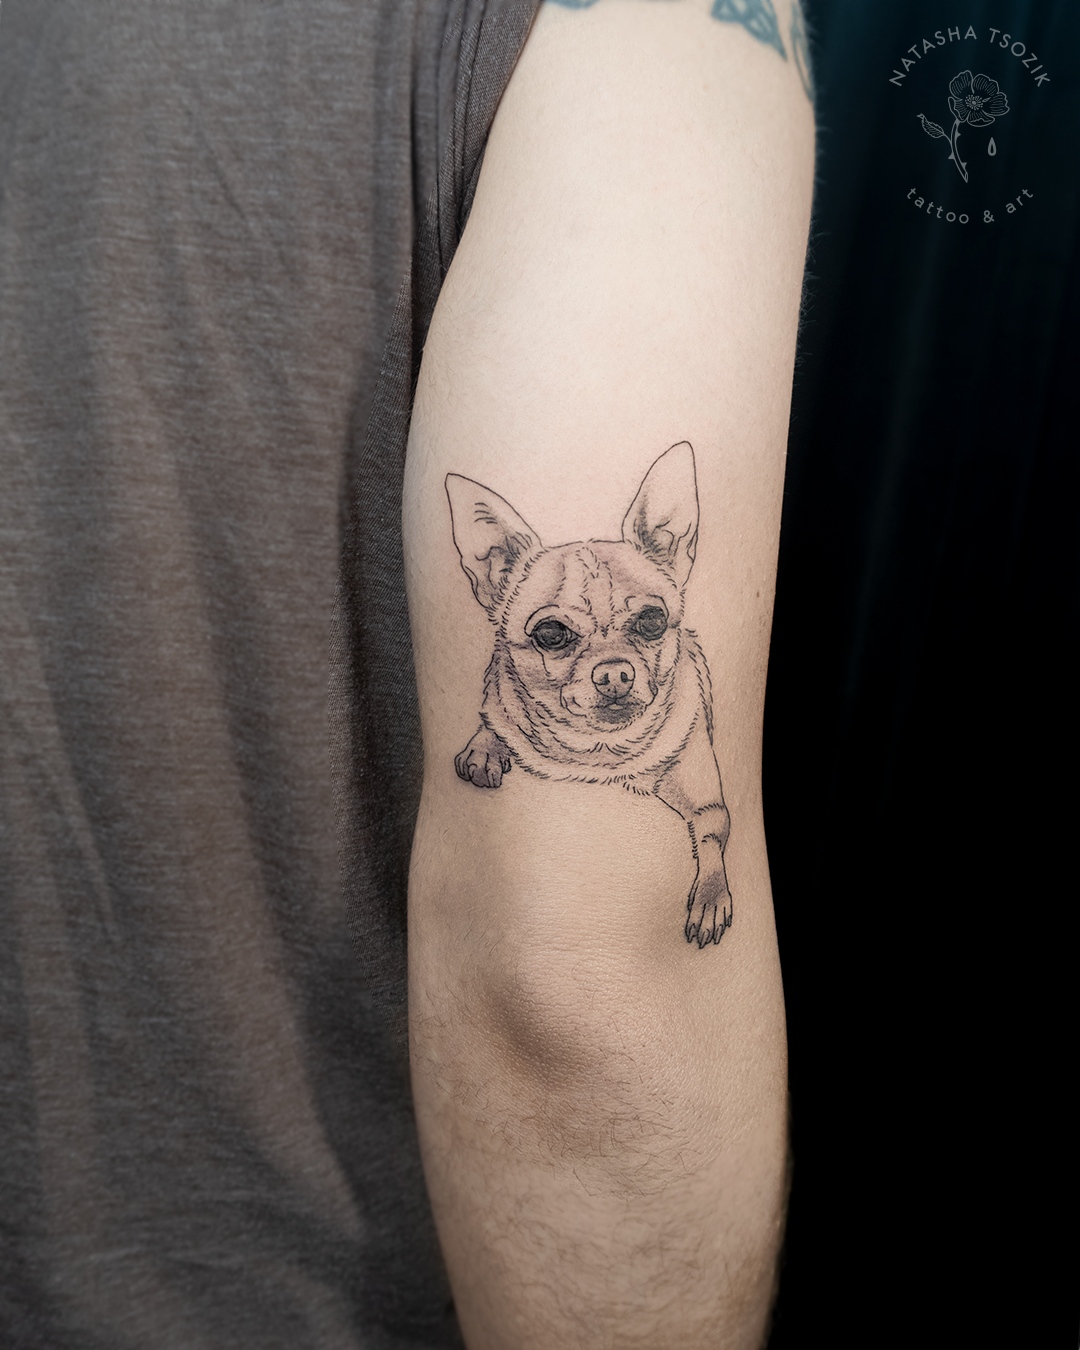 Pet portrait tattoo on an bicep.